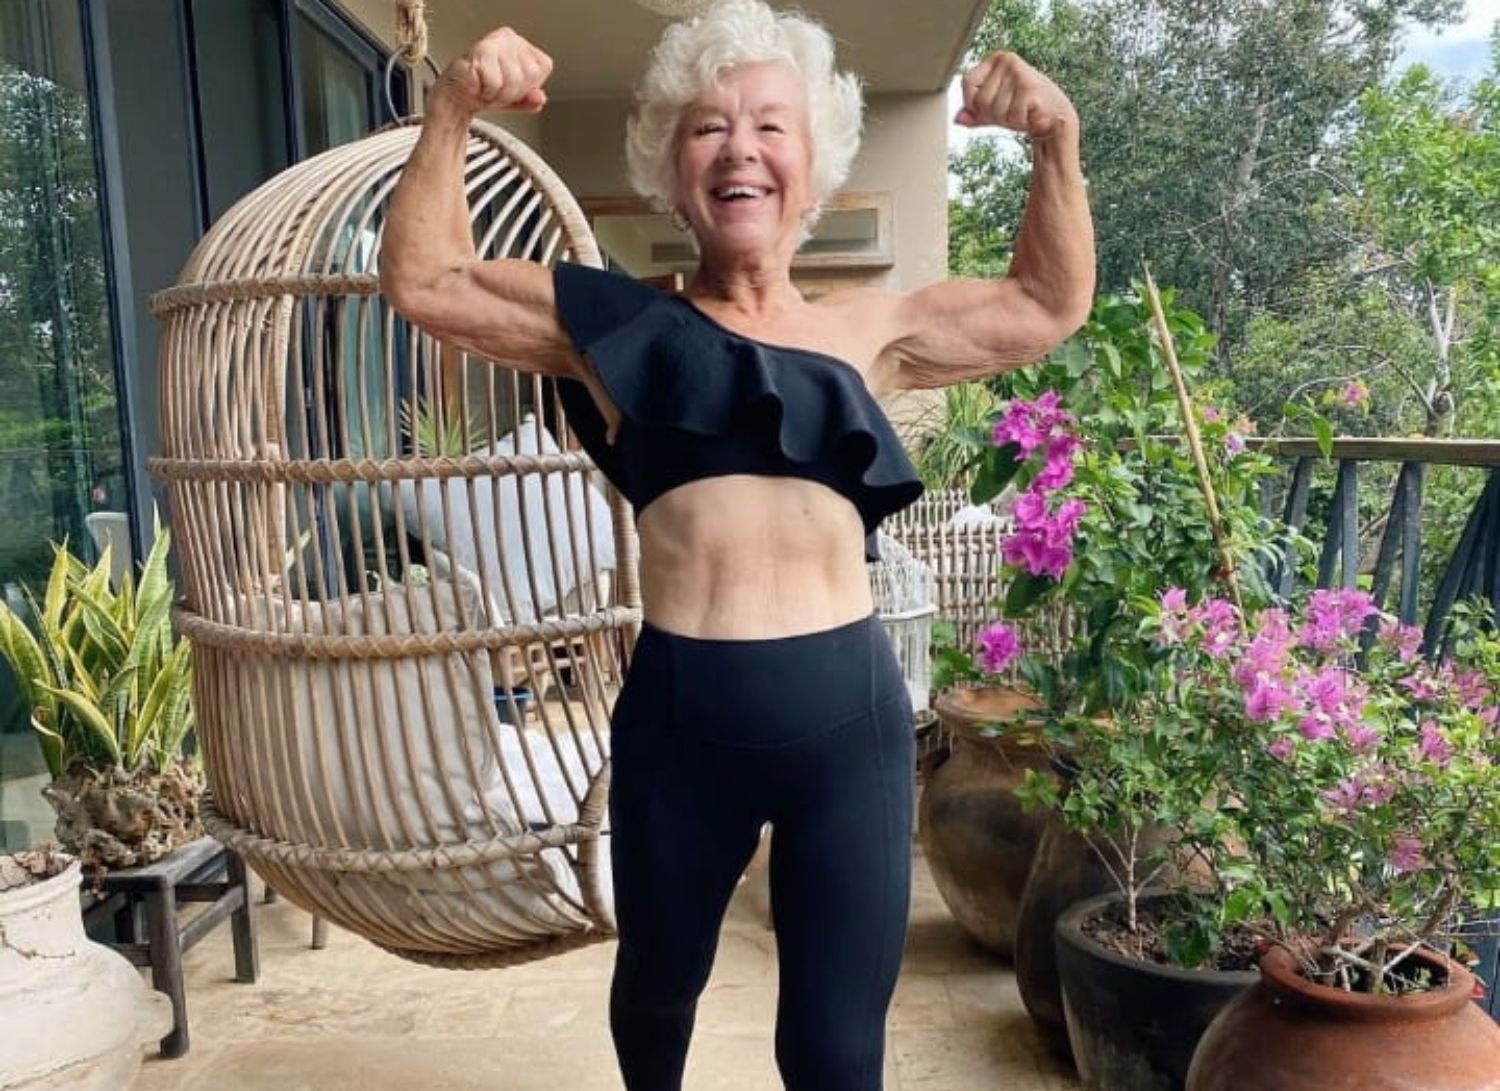 Joan, la 'influencer' fitness de 76 años que cambió su vida poniéndose en forma: "No soy la misma". Foto: Instagram